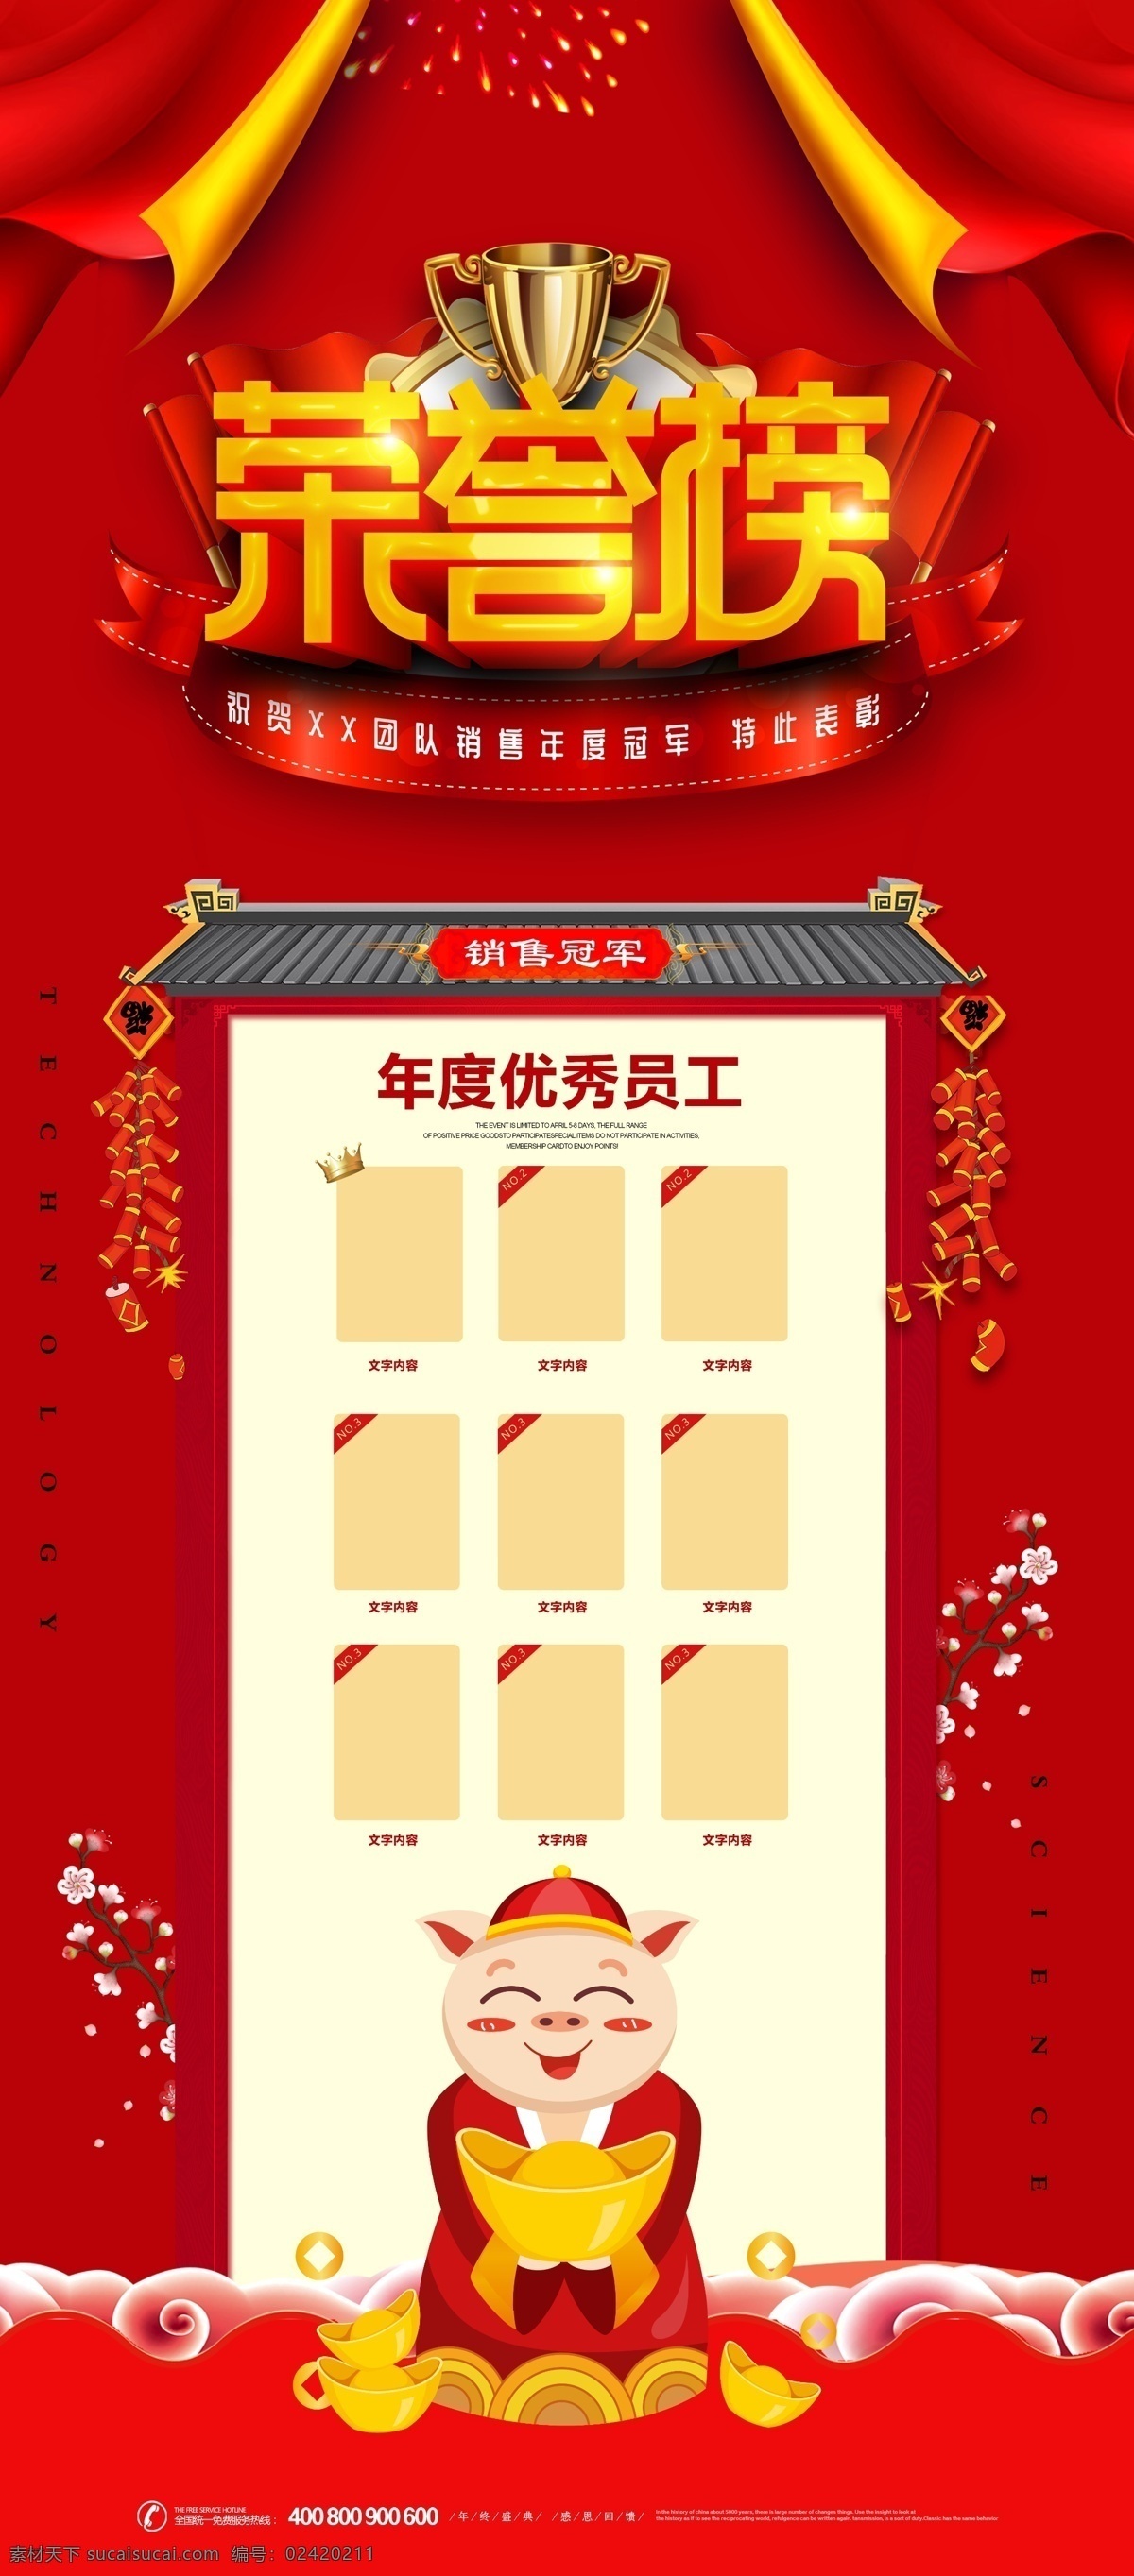 中国 风 荣誉榜 年度 评选 易拉宝 展架 展板 易拉宝模板 免费 x展架设计 公司x展架 企业 模板 创意展架设计 时尚展架设计 宣传广告 画面设计 x 免费模板 免费素材 平面素材 年度评选